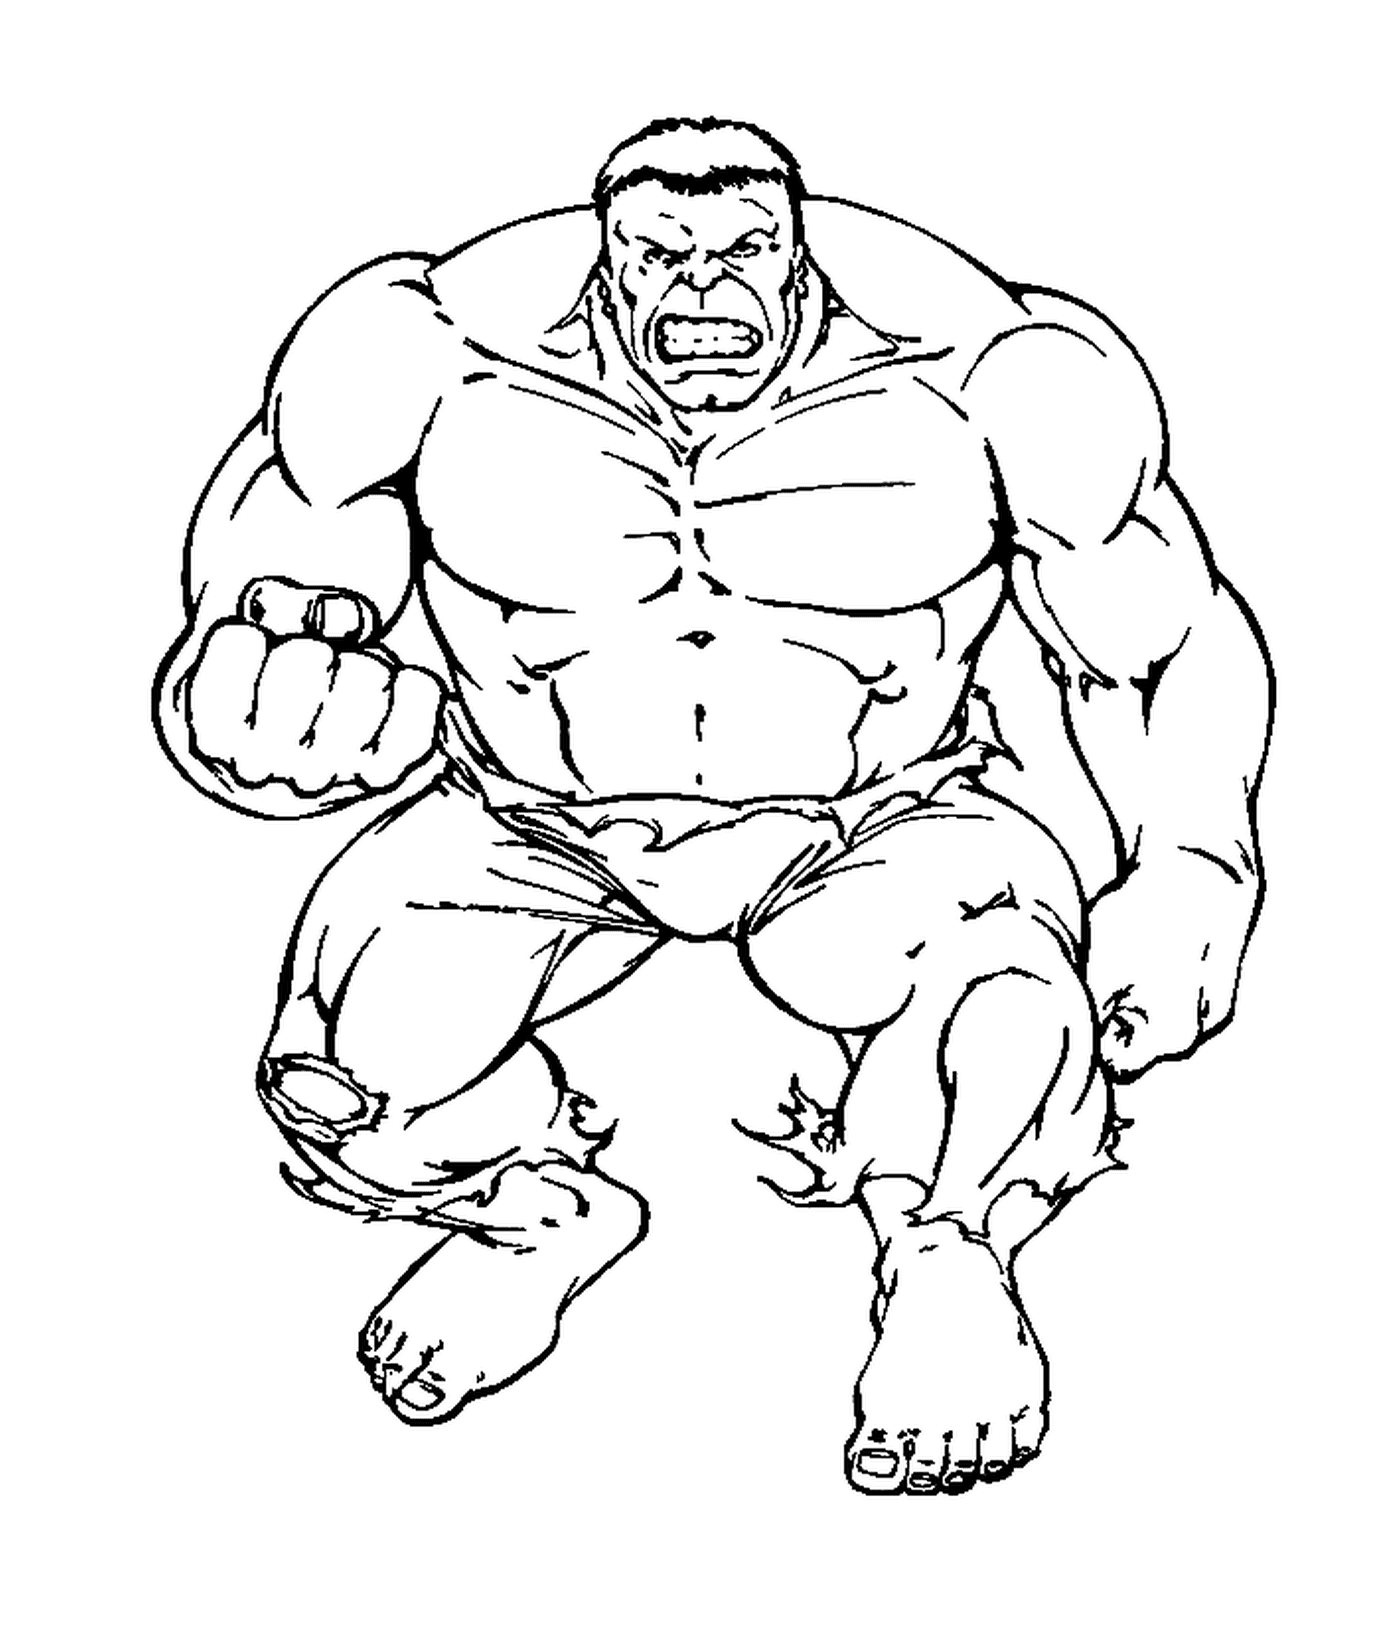  Hulk mit seiner wütenden Faust 